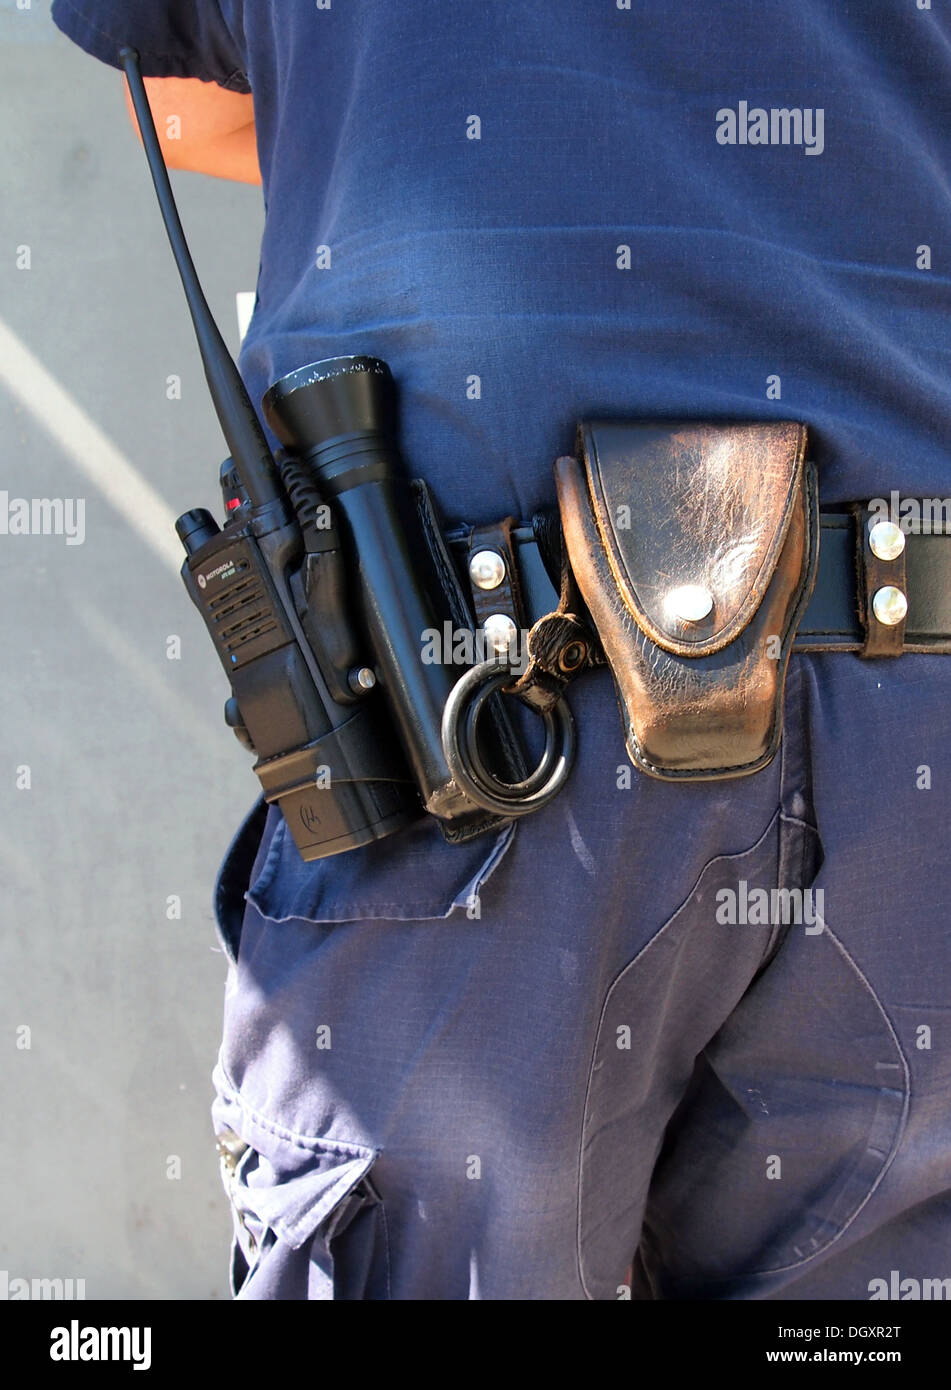 El equipo incluye una radio, linterna y esposas en funda de cinturón del  agente de policía, EE.UU Fotografía de stock - Alamy